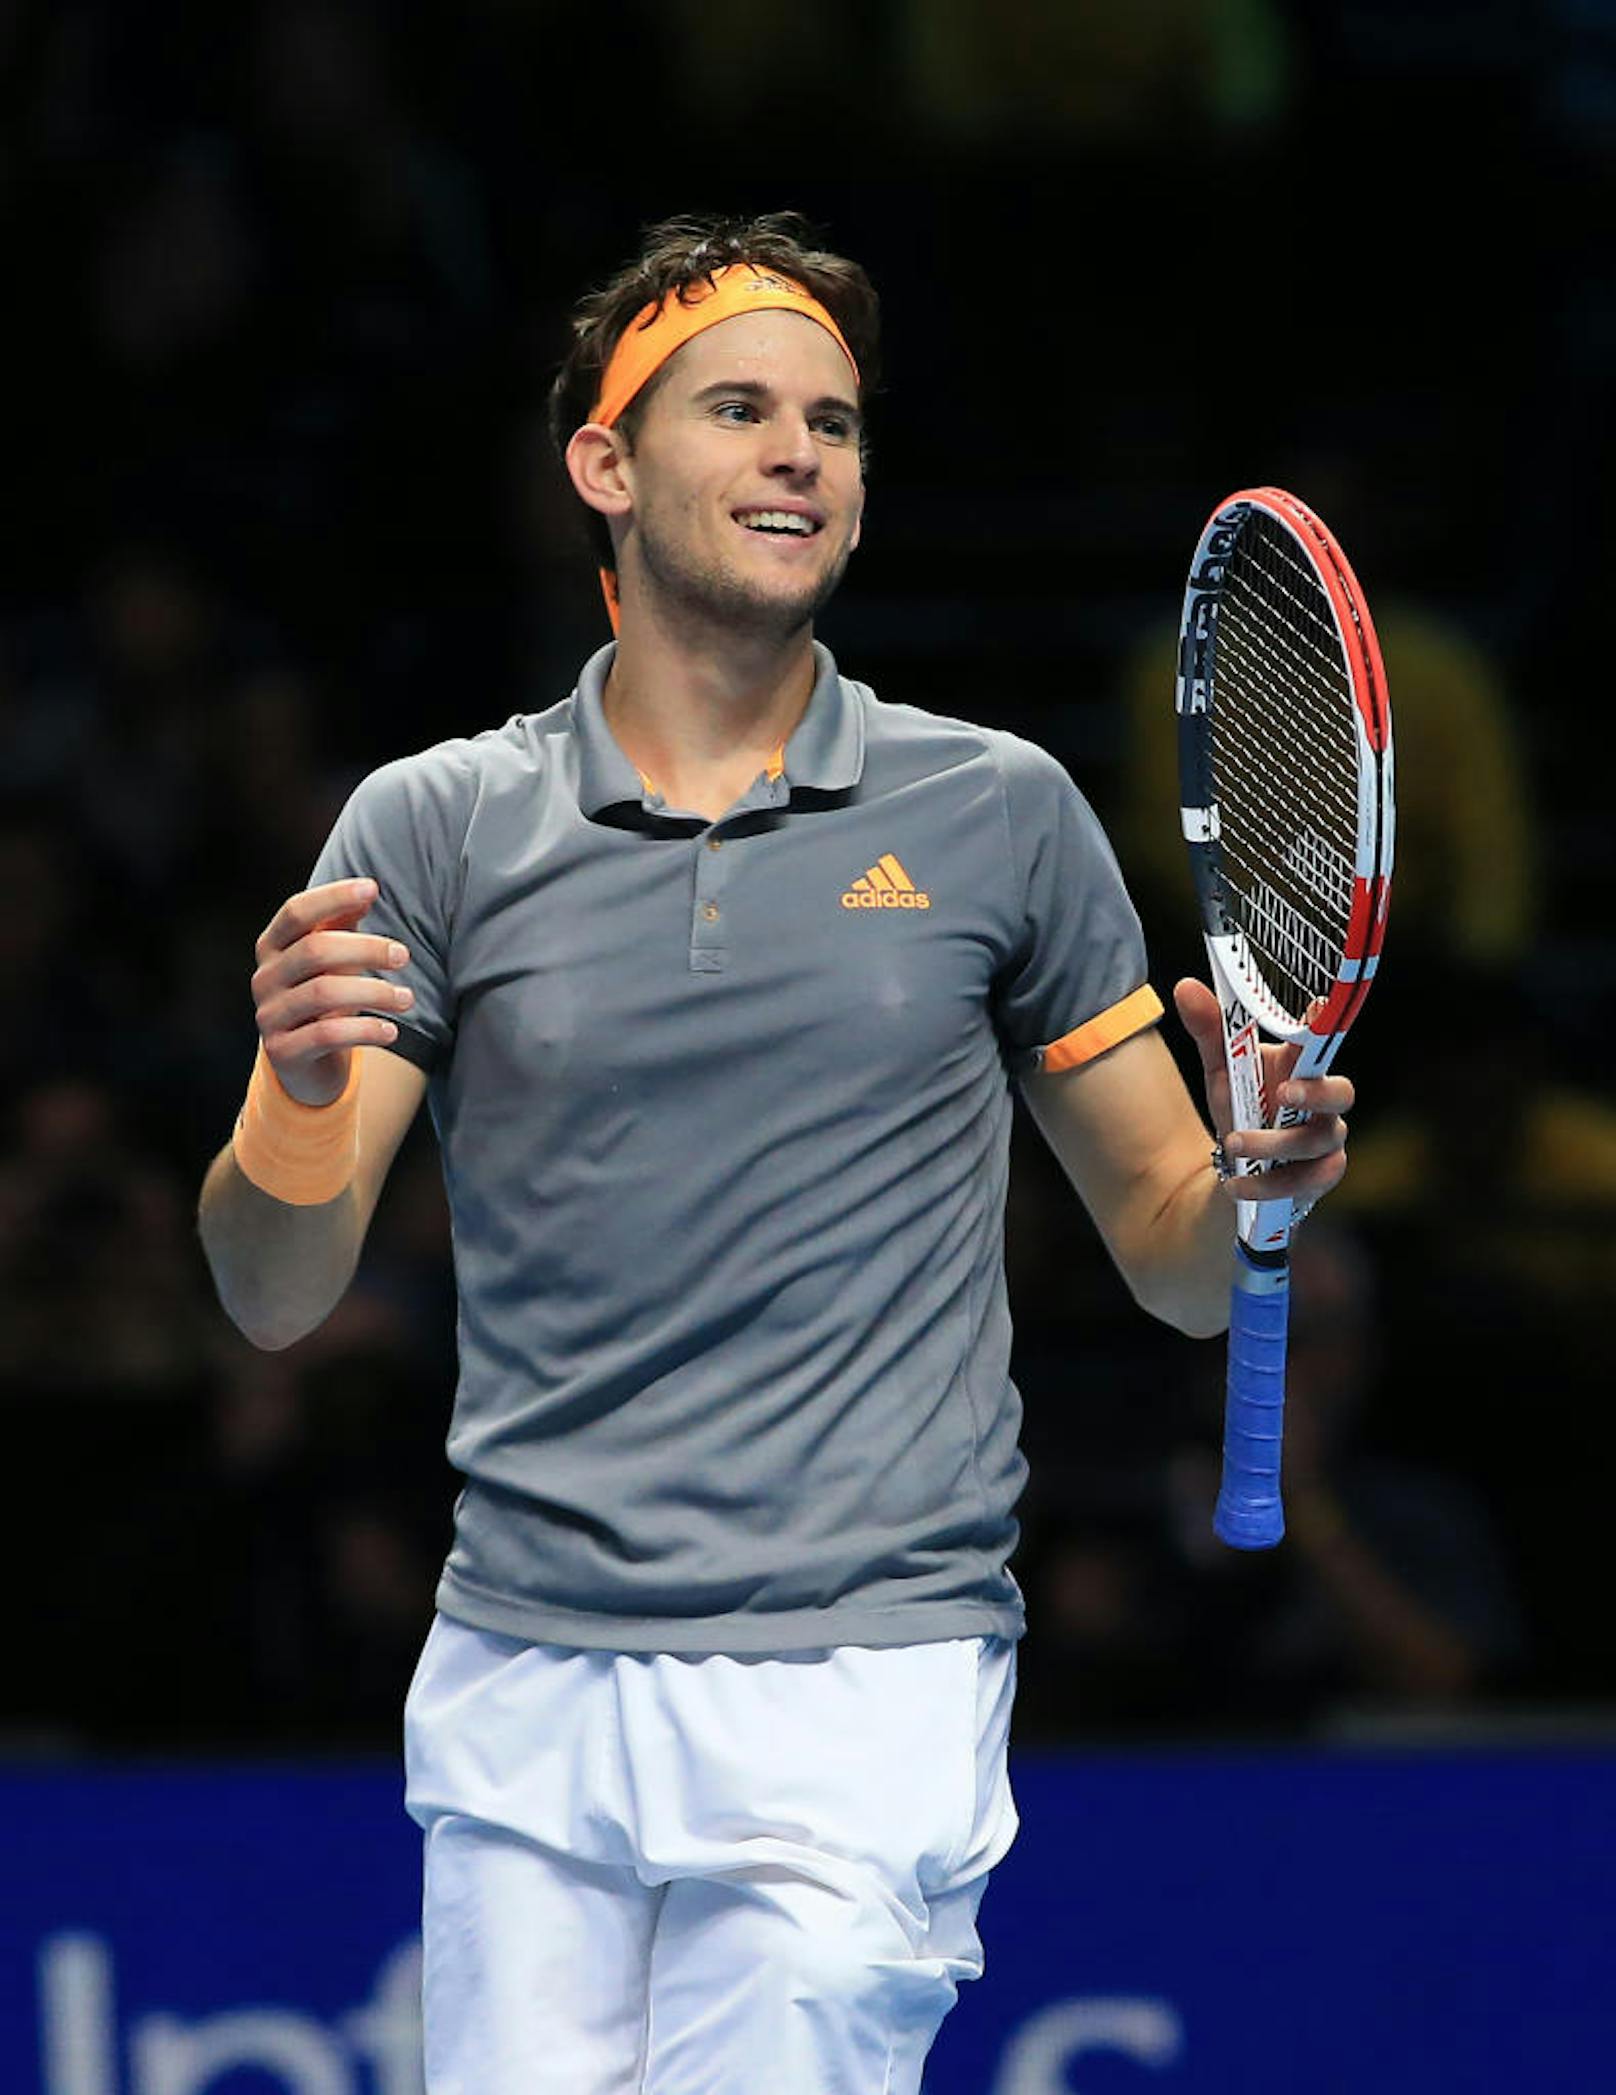 Bei den ATP-Finals in London spielt Thiem groß auf: In der Gruppenphase besiegt er Roger Federer und Novak Djokovic in einer hochklassigen Partie. Als Gruppensieger kommt Thiem weiter, schlägt im Halbfinale Alex Zverev.